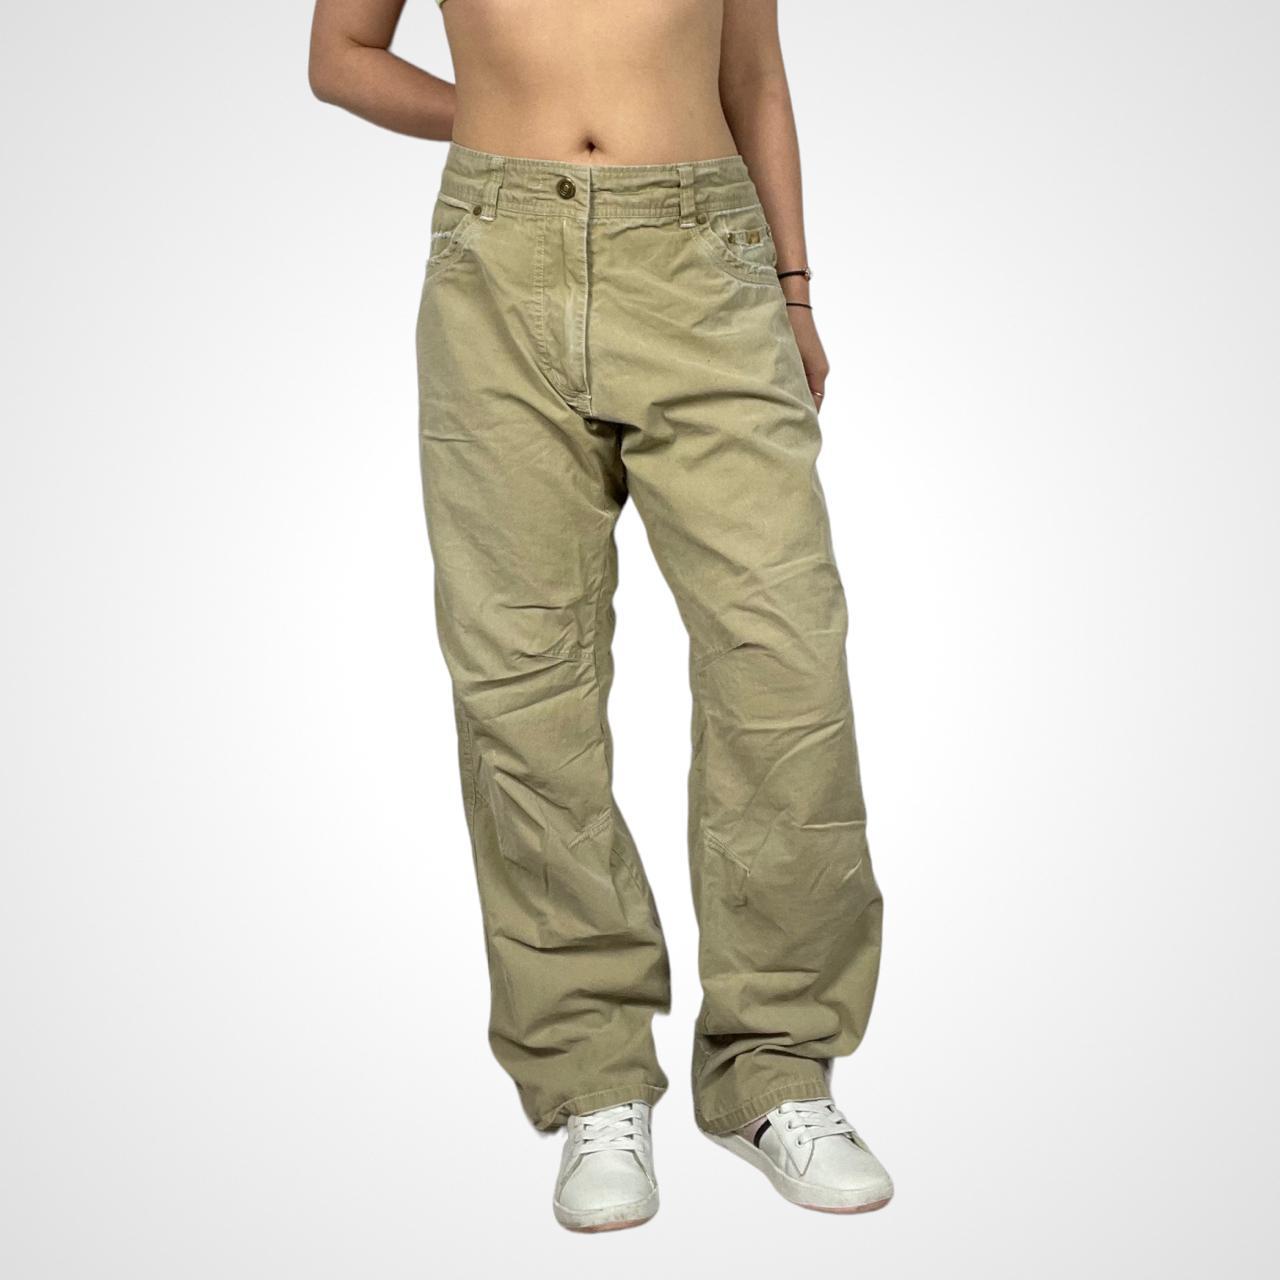 y2k baggy cargo pants in brown tan Brand:kuhl Size... - Depop